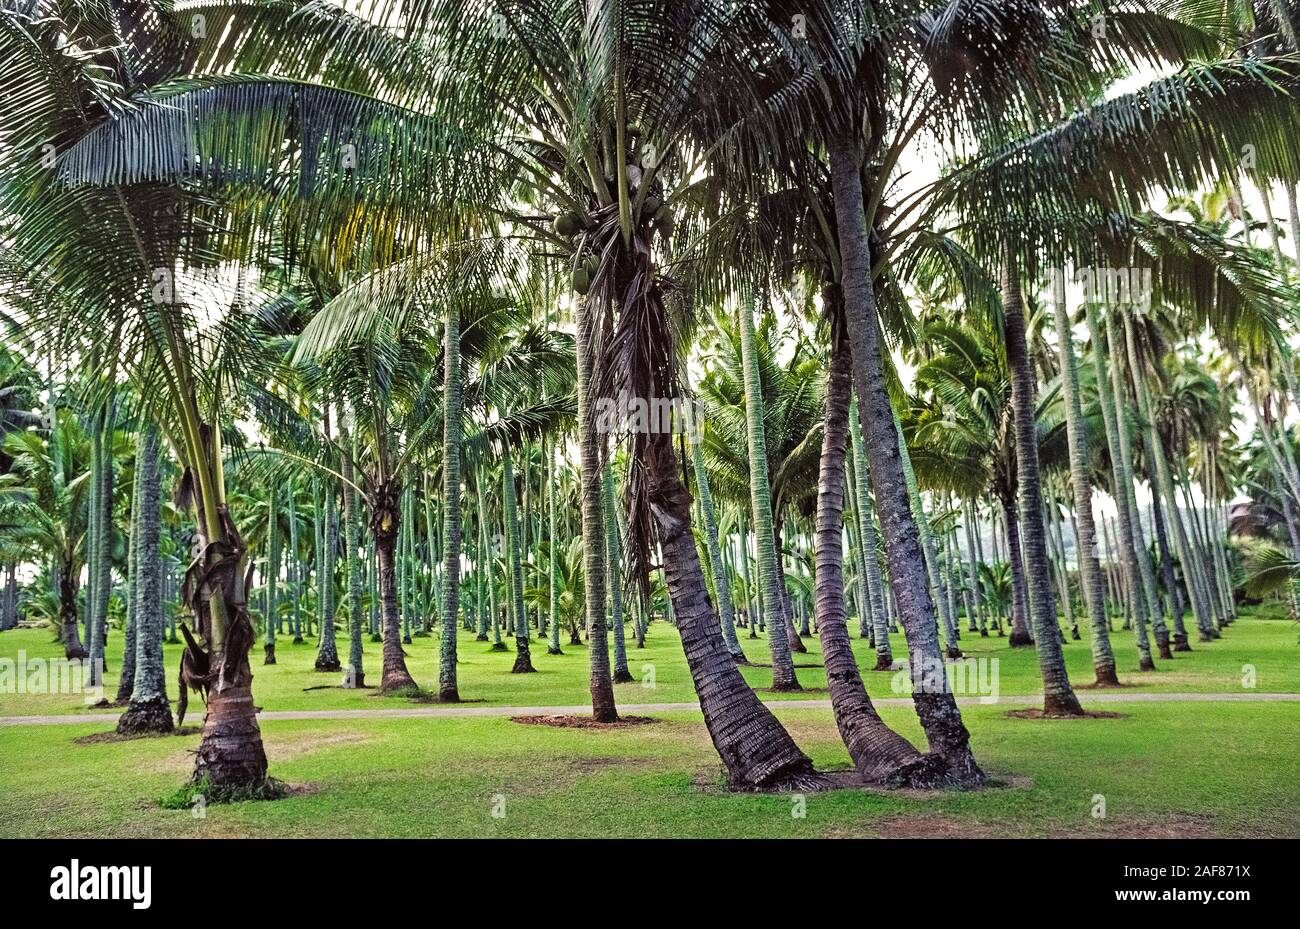 Uno de los árboles más valiosos para los antiguos hawaianos fue la palma de coco (Cocos nucifera), como éstos que habiendo sido creciente en una arboleda de 2.000 palmeras en Kauai, una de las ocho grandes islas de Hawaii, EE.UU. Trajo al Estado Aloha por colonos polinesios de Hawai, cocoteros proporcionó comida, un alimento líquido y materiales de construcción. Los imponentes palmeras alcanzan una altura promedio de 60 pies (18 metros), pero pueden crecer tan alto como 100 pies (30 metros). La vida media del árbol es de 60 a 70 años, aunque algunos cocoteros vivir durante más de un siglo. Foto de stock